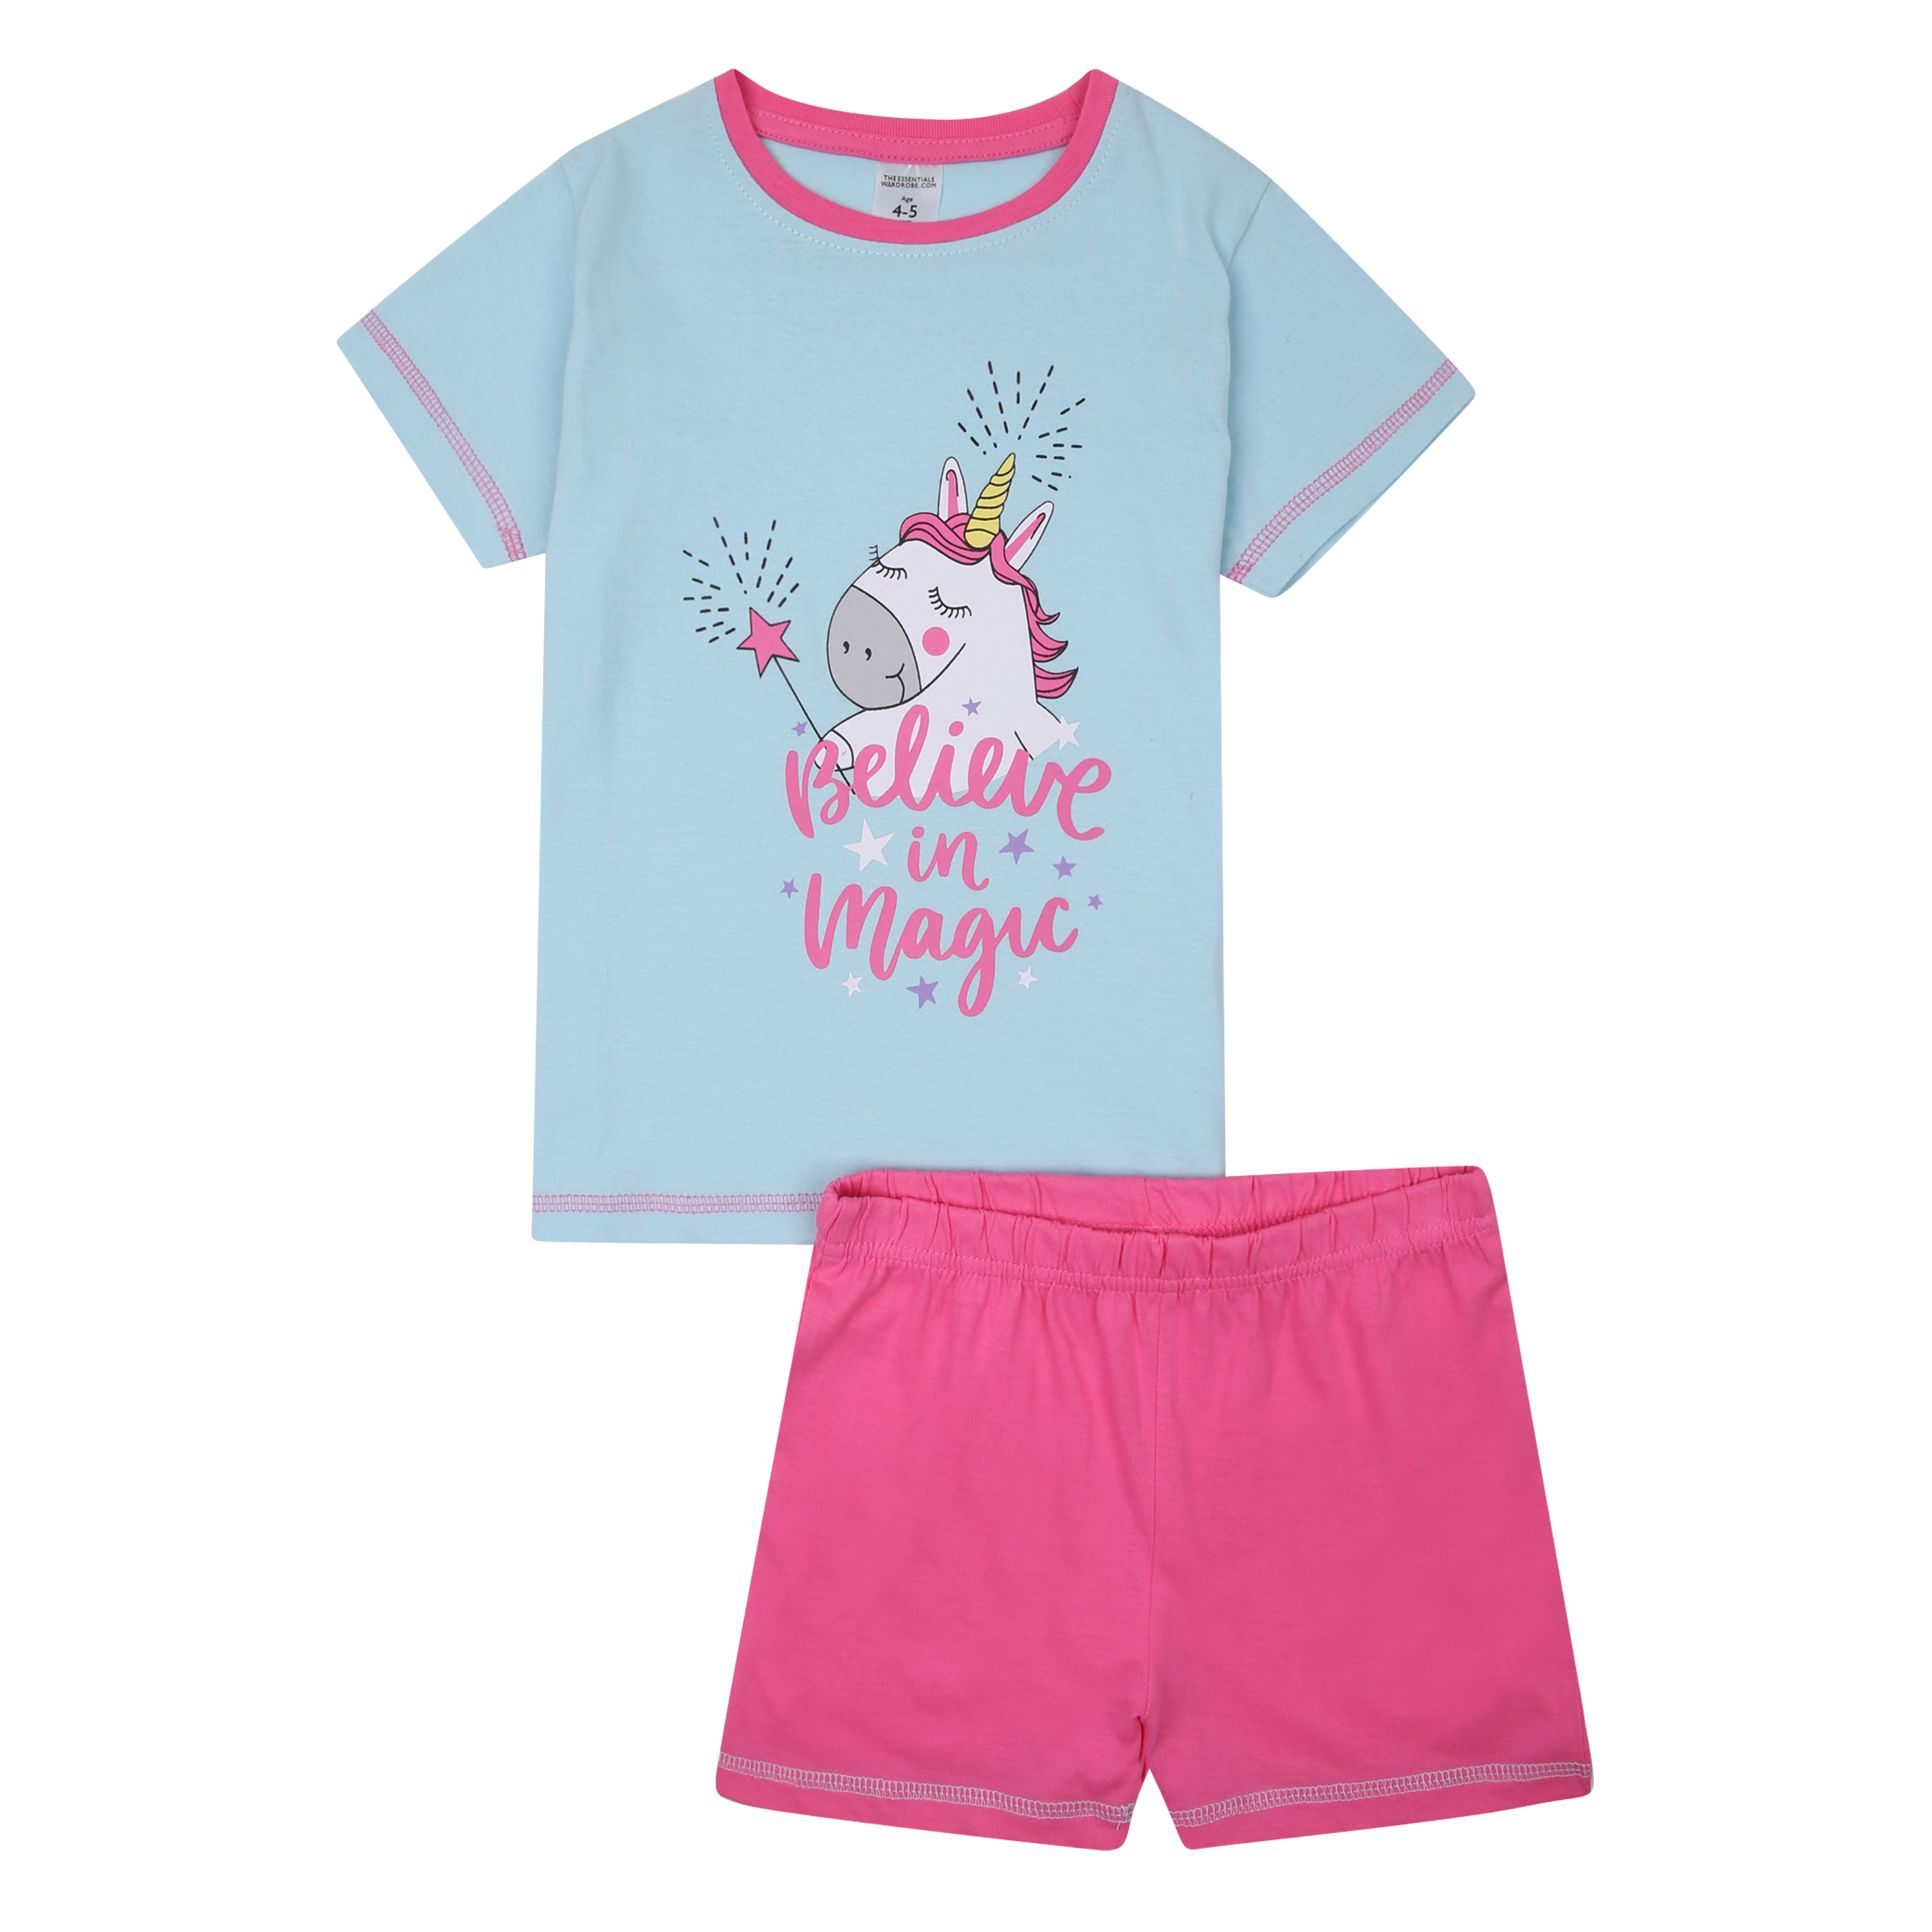 Girls Short Pyjamas Shorty Nightwear Sleepwear Pjs Unicorn Size 12 Months to 11 Years